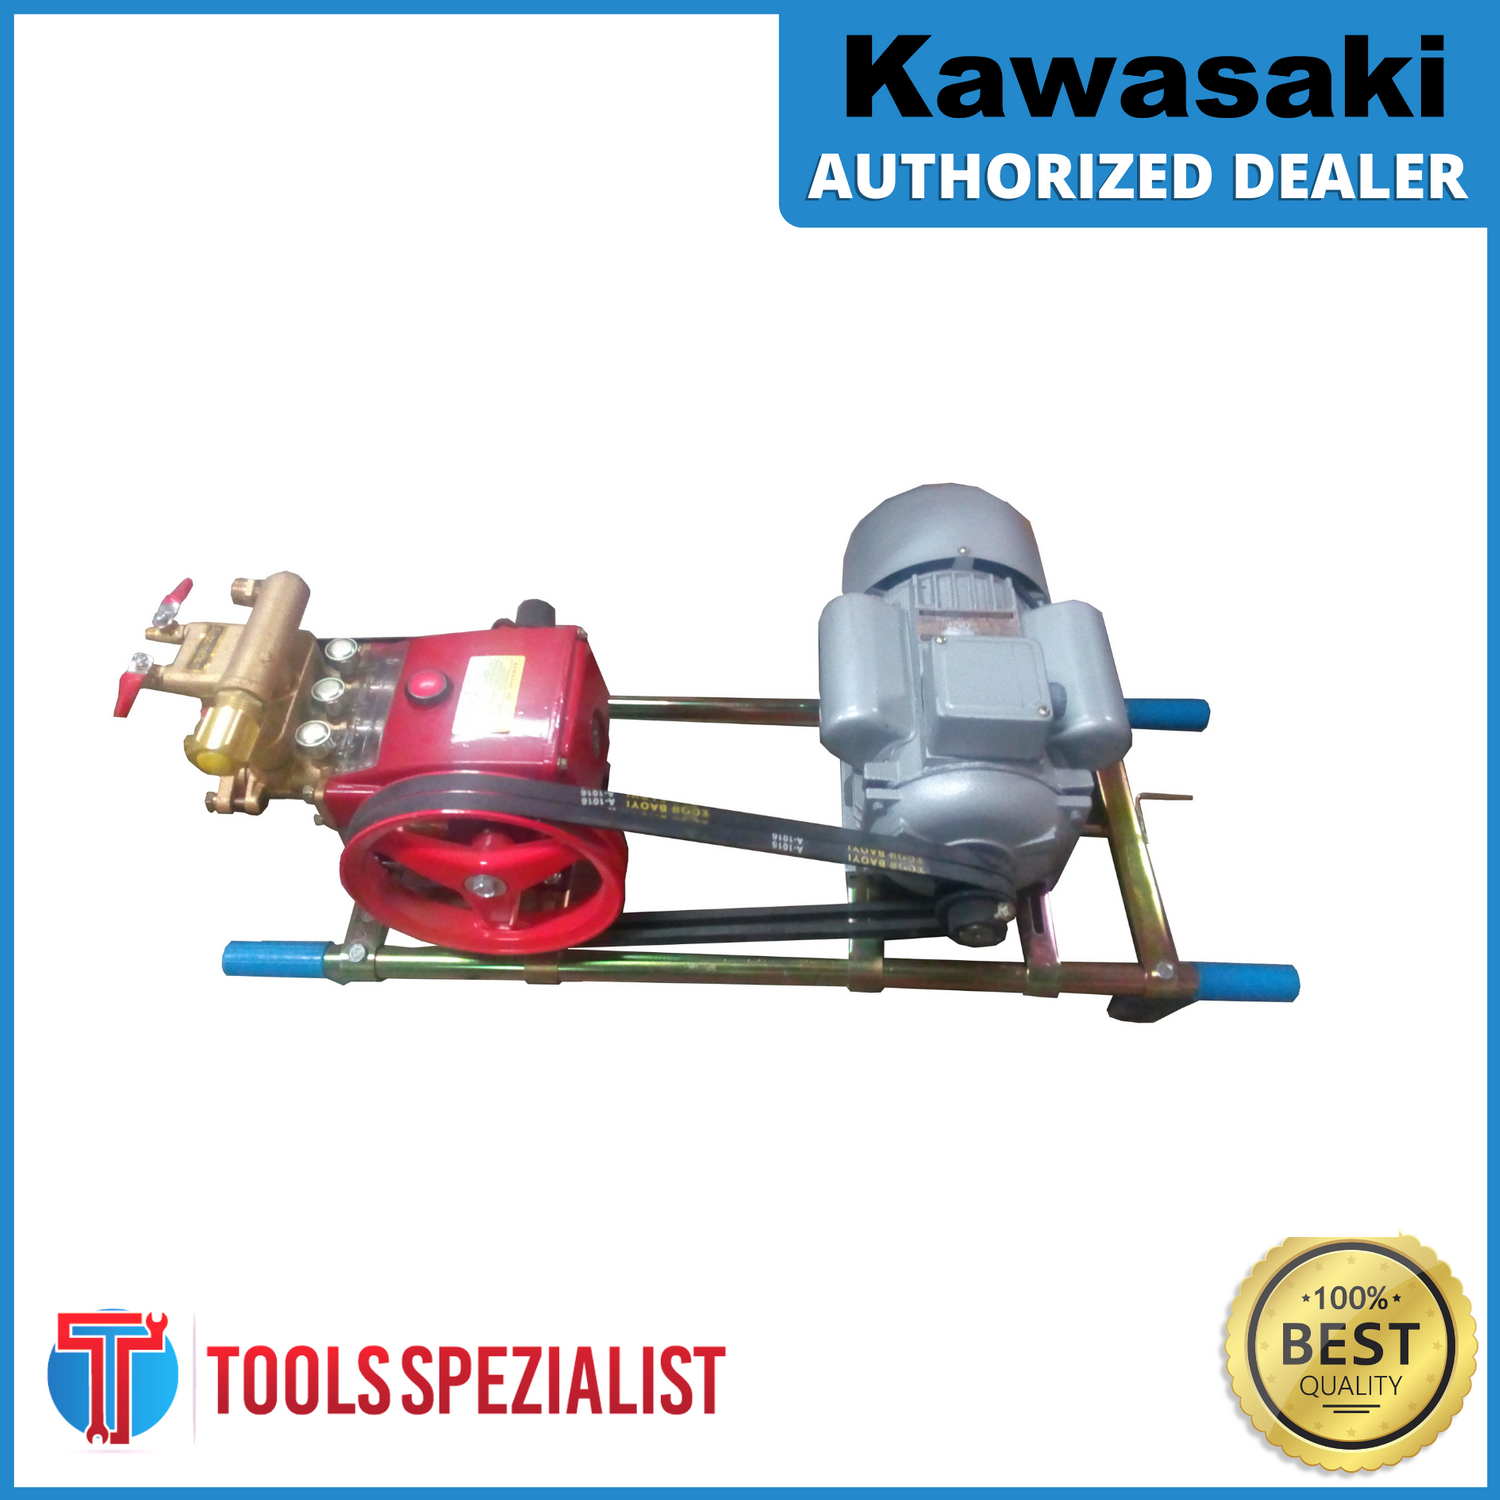 Kawasaki Power Washer 1.5Hp 4